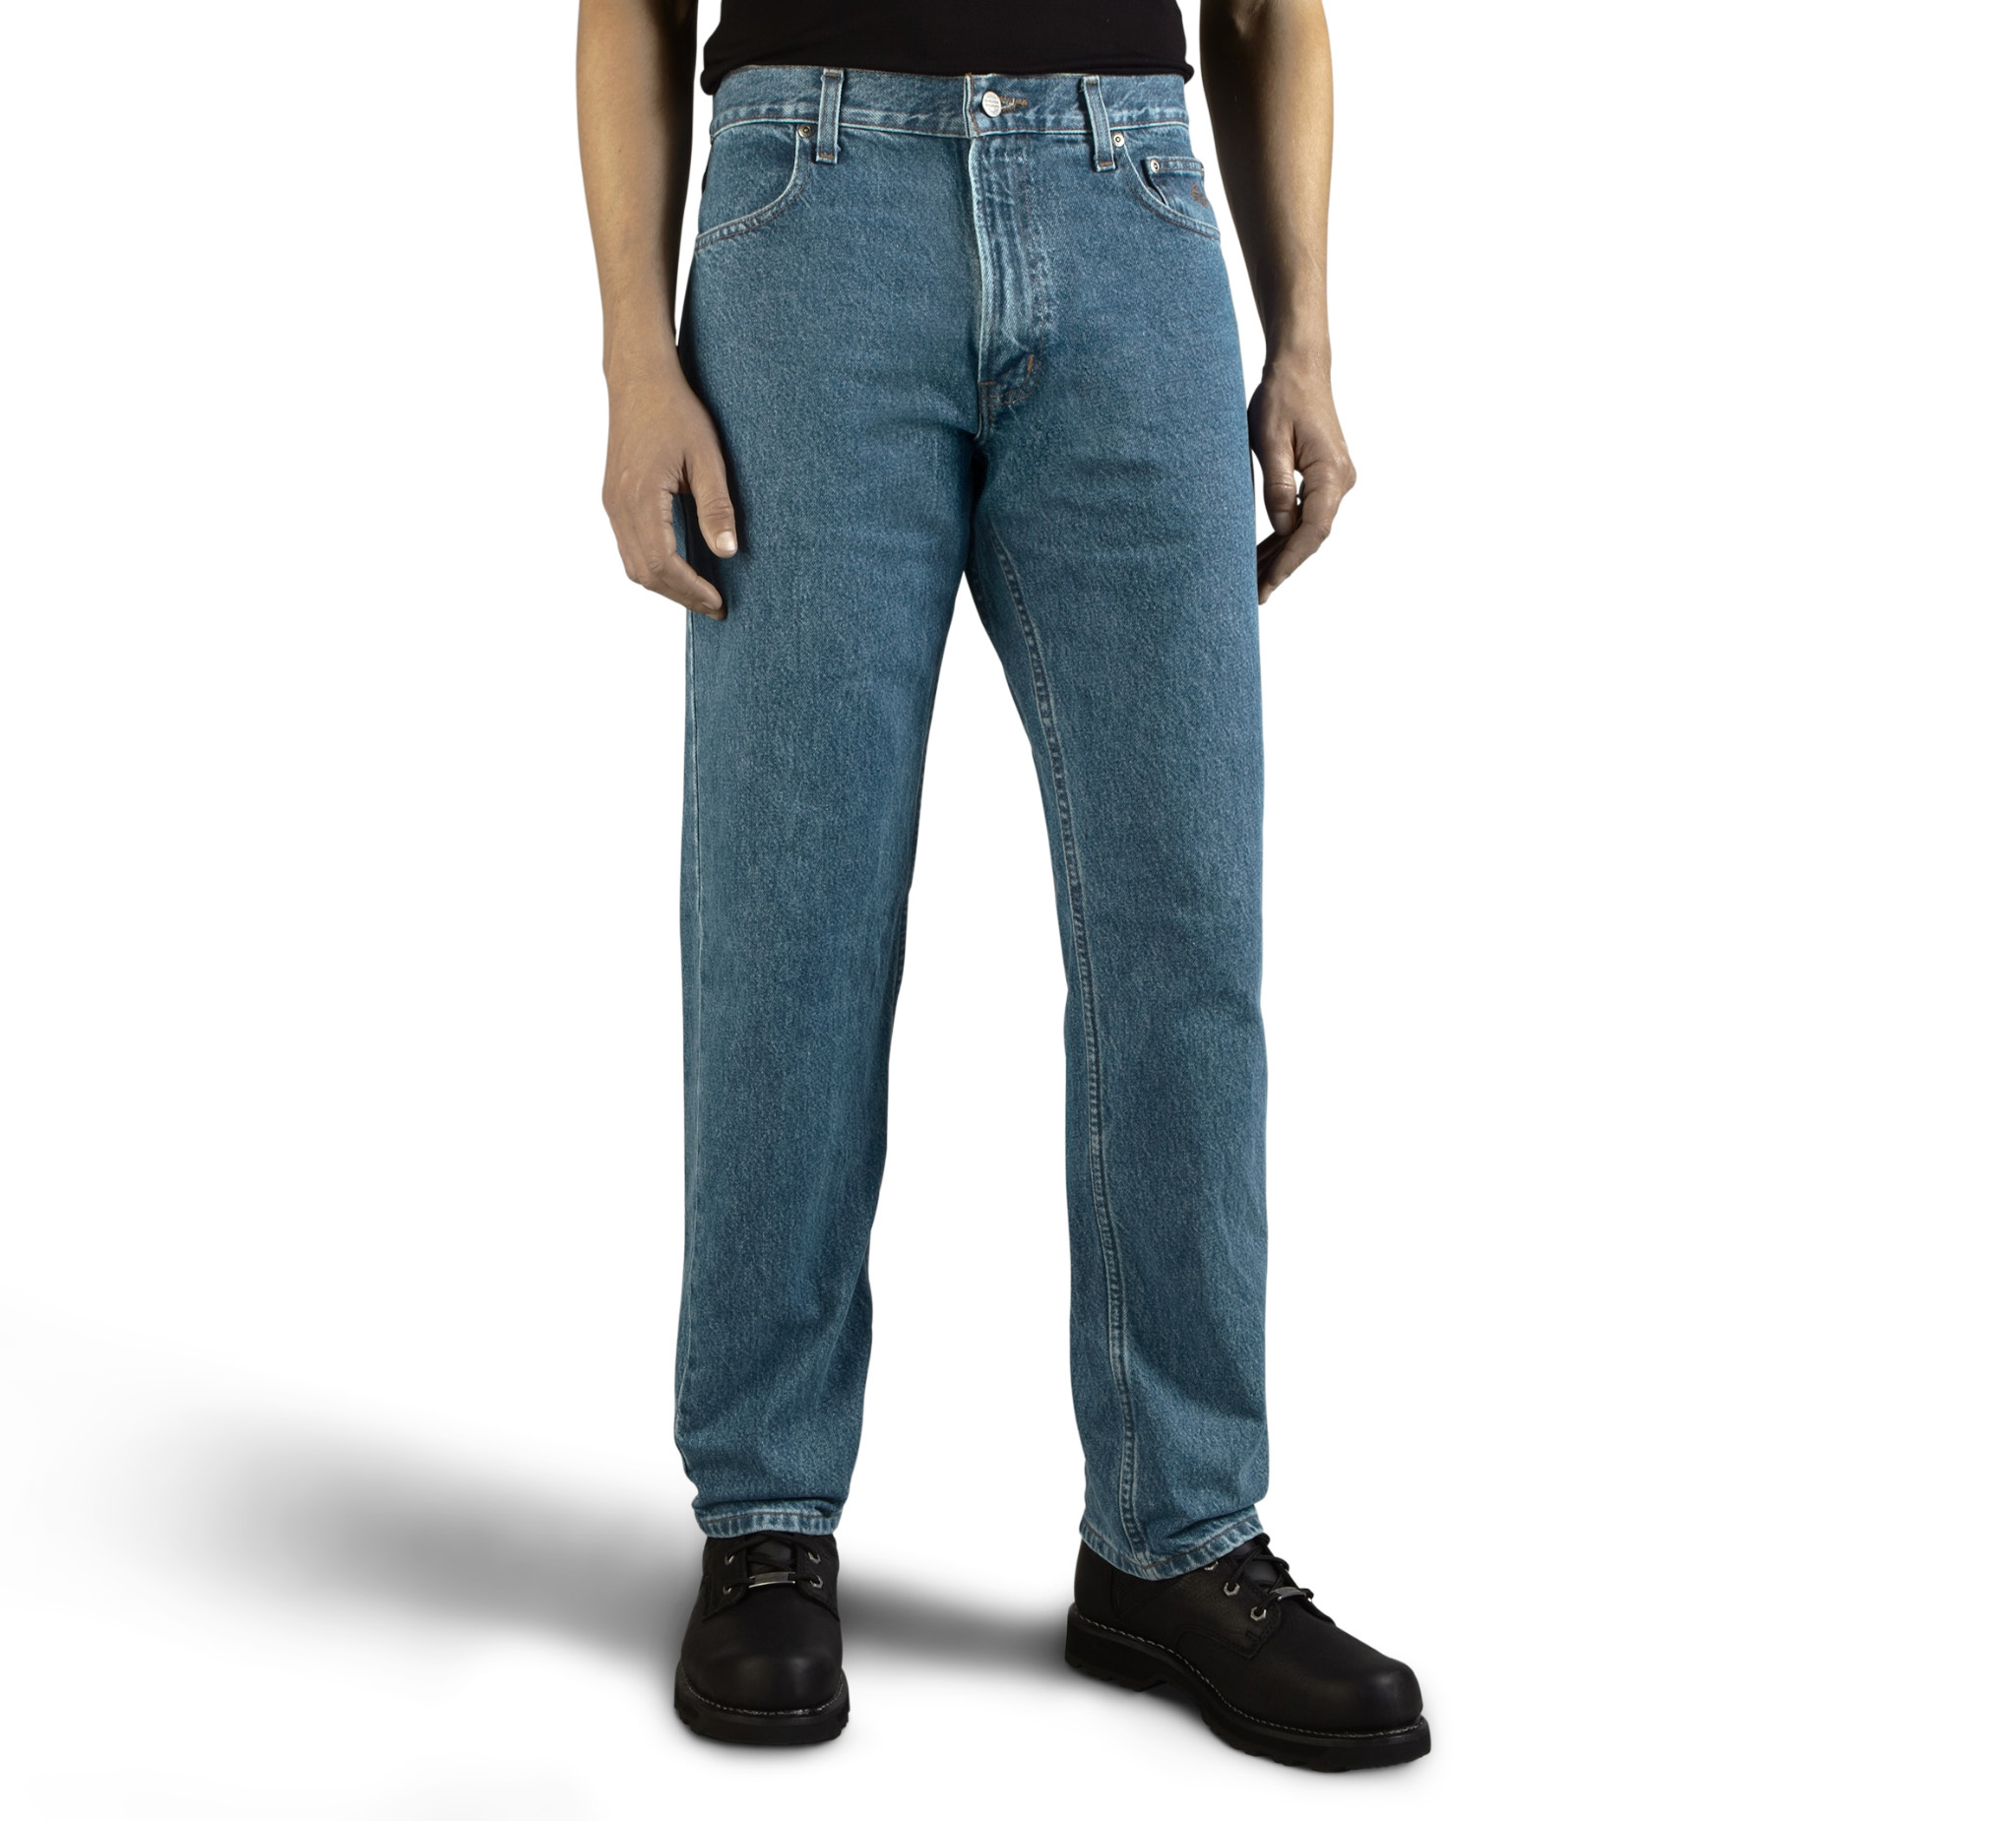 Harley Davidson Motor Clothes Blue Jeans Biker Denim Pants Mens Size 34 x 36 